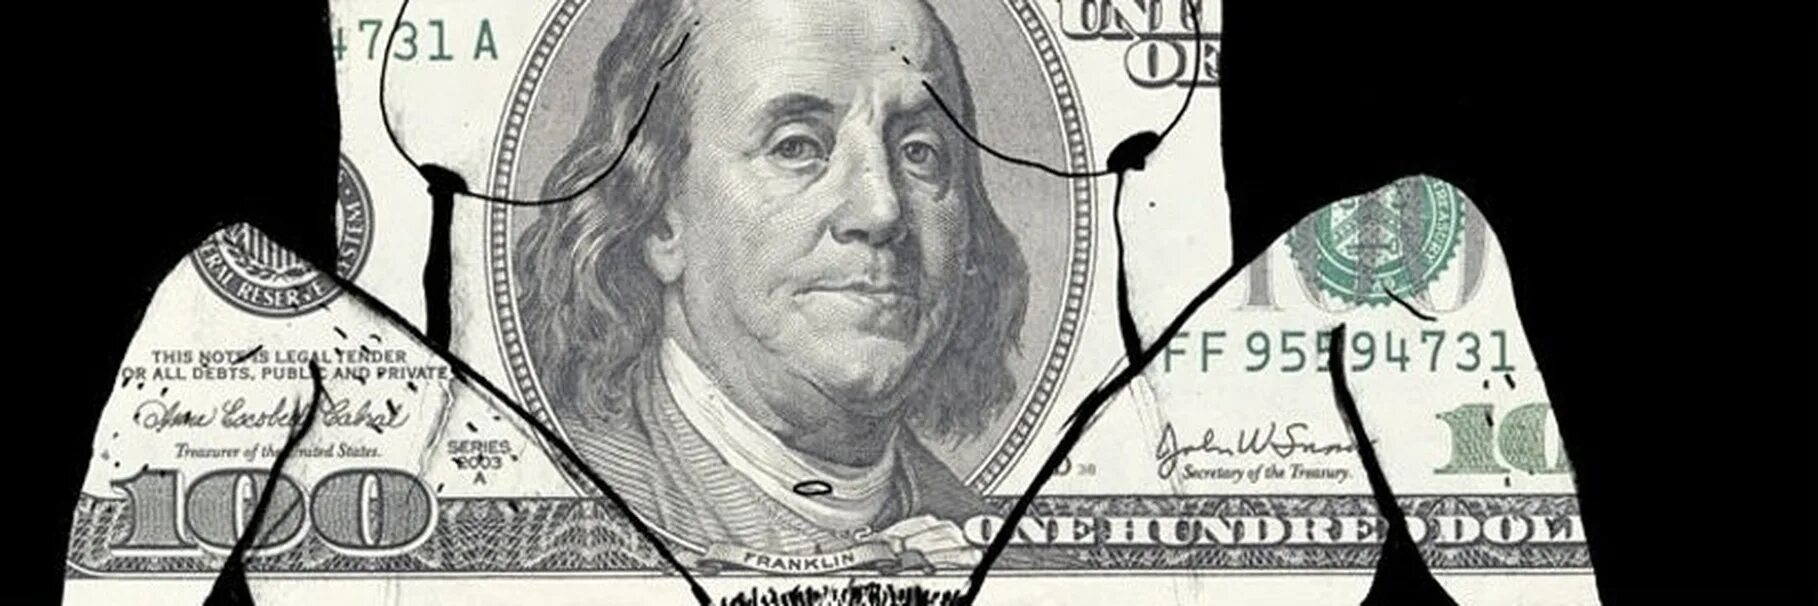 Изображен через е. Бенджамин Франклин на 100 долларах. Франклин 100 долларов Бенджамин долларах. Купюра 100 долларов Бенджамина Франклина. Бенджамин Франклин на купюре 100.